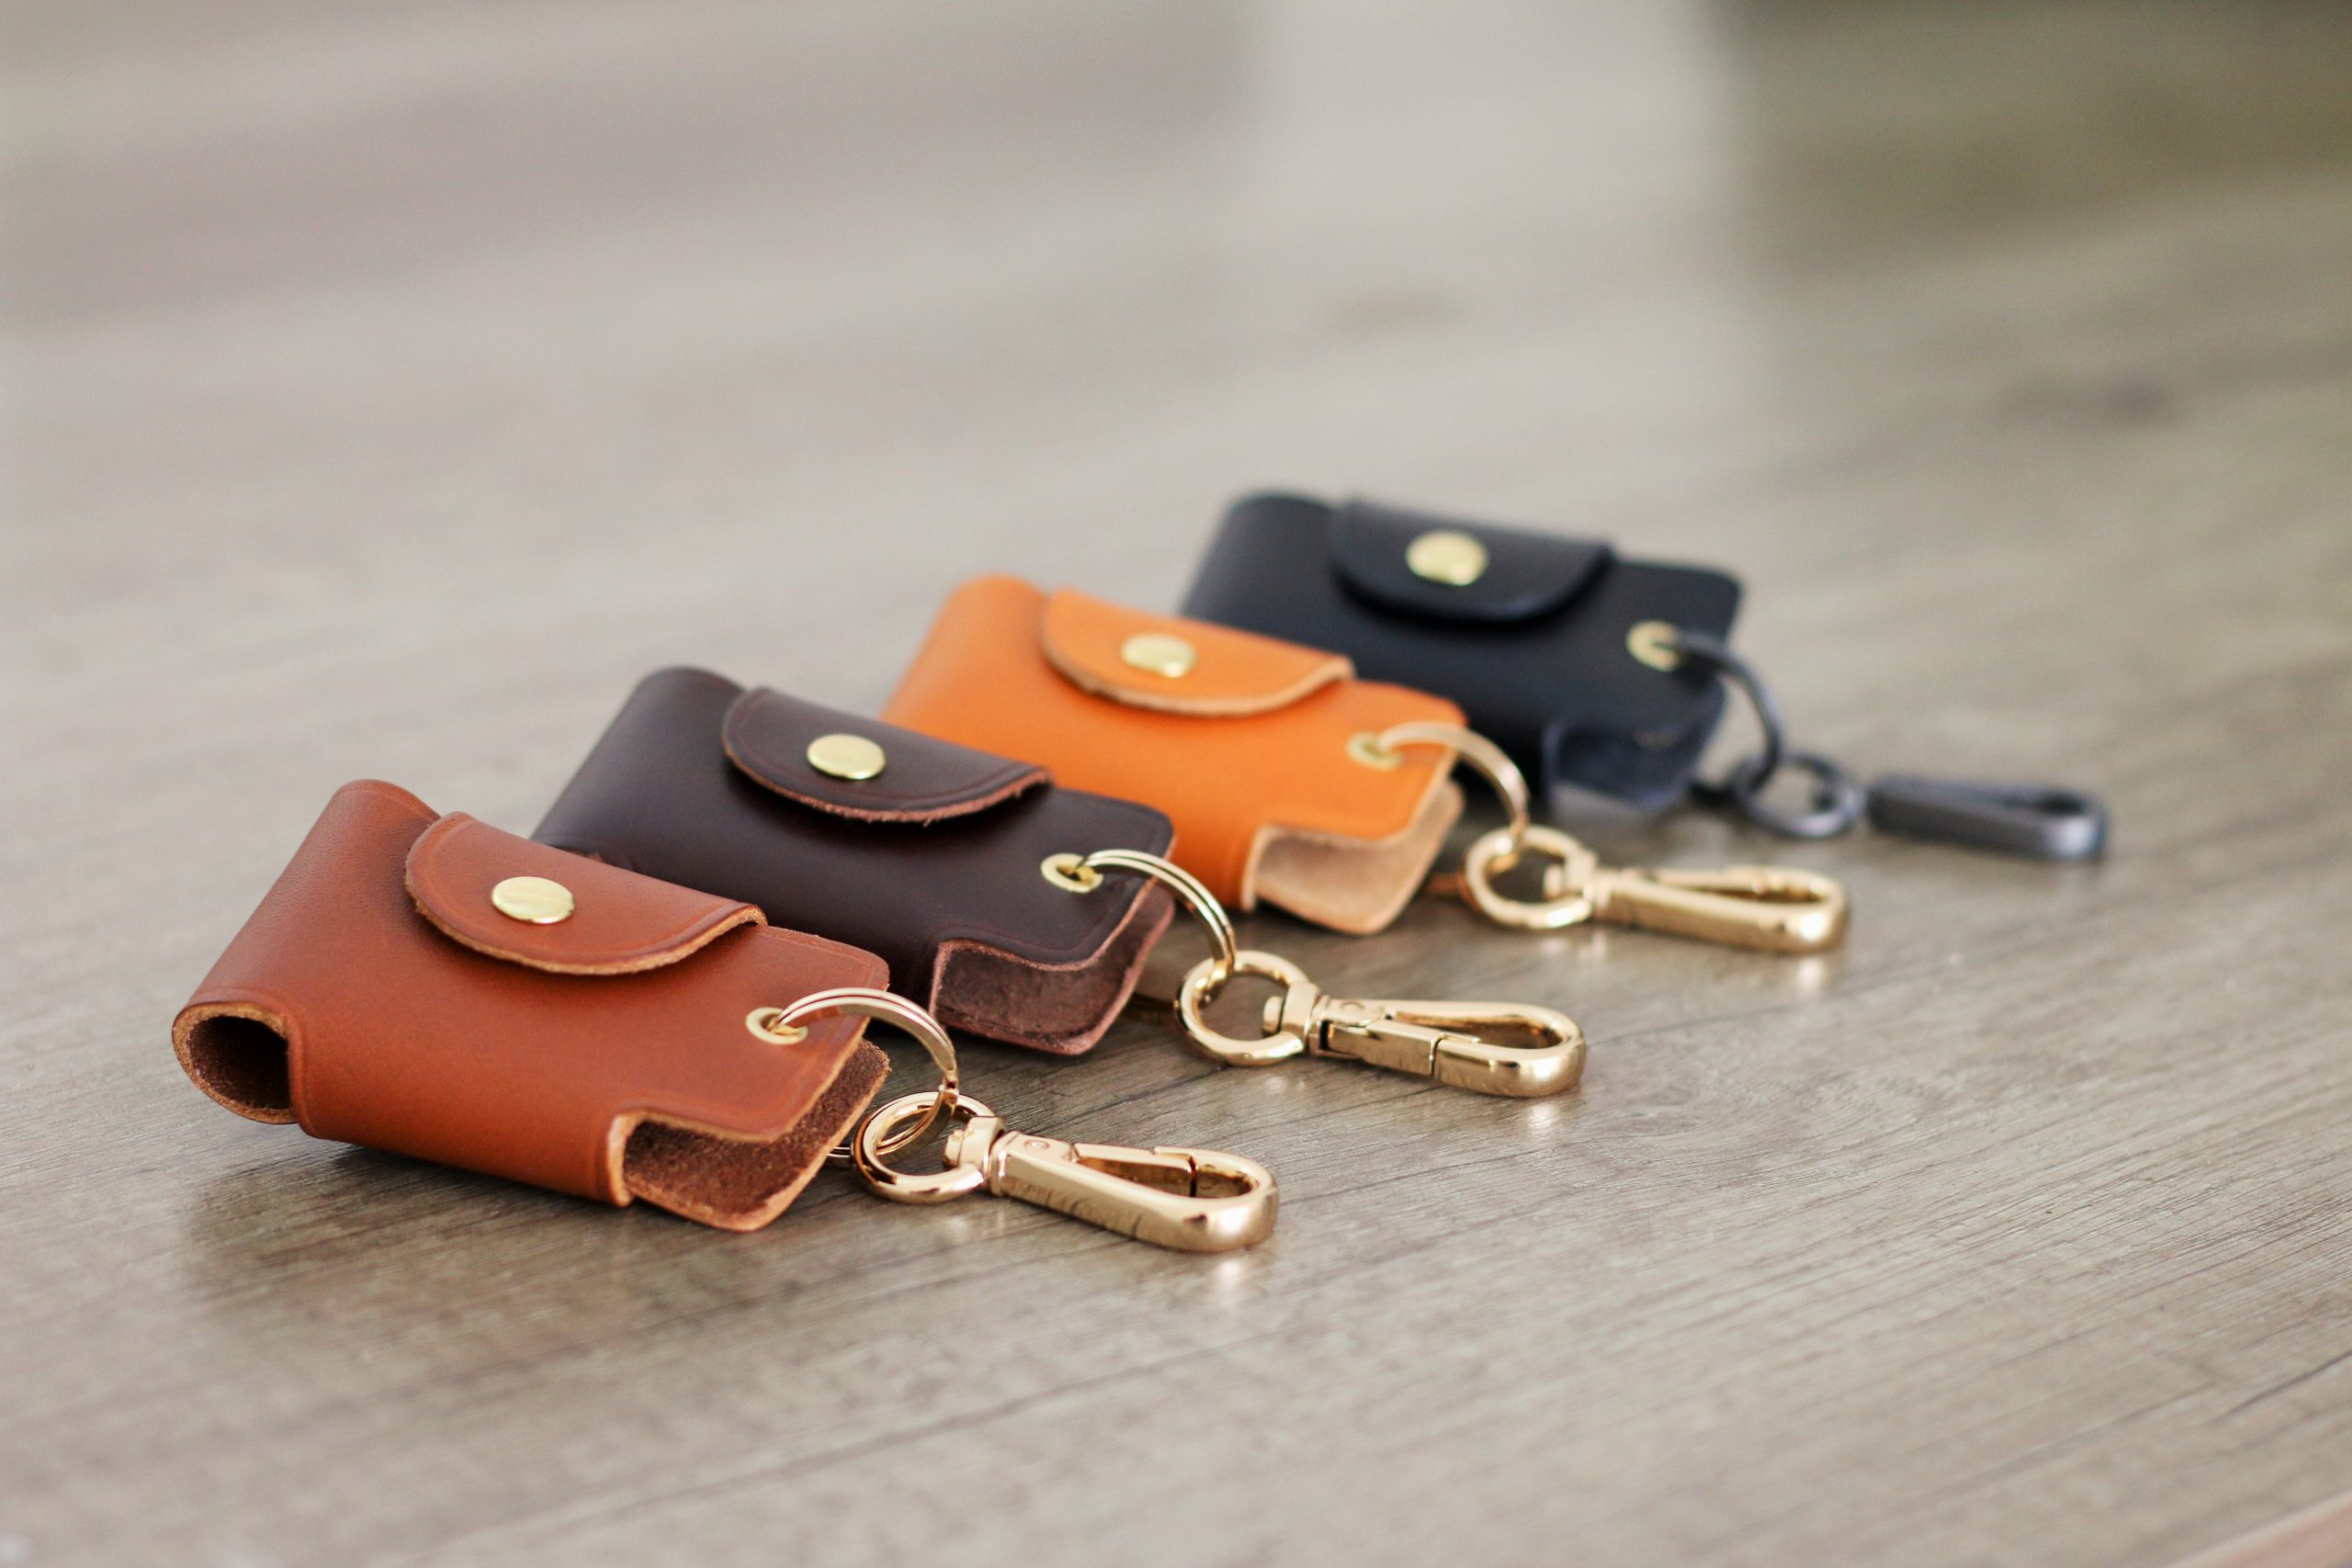 Personalized Leather Key Case Leather Key Holder Leather Key 